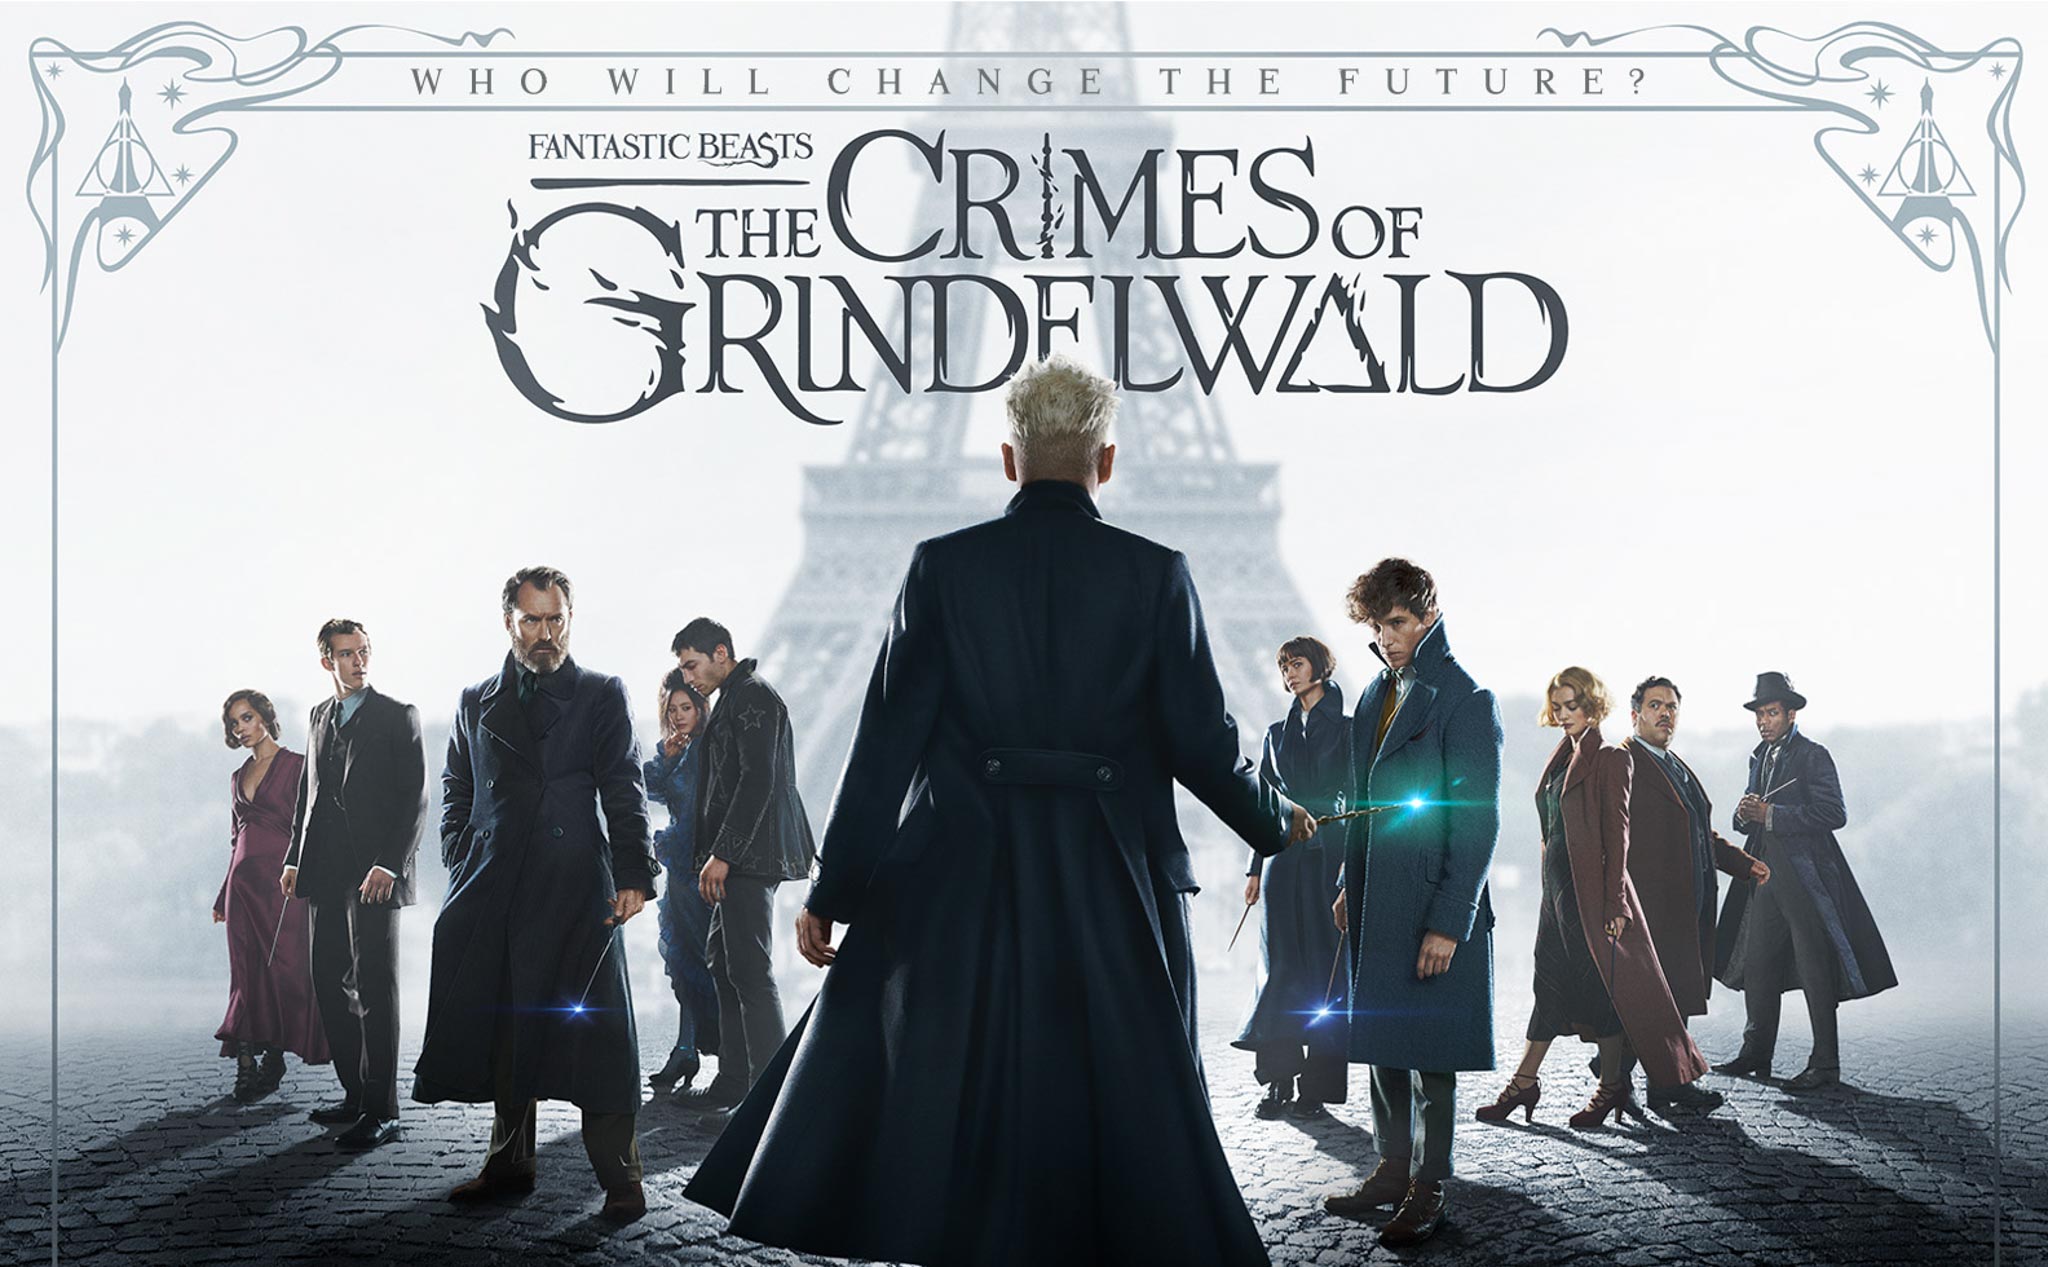 [Đánh giá phim] Sinh Vật Huyền Bí: Tội Ác của Grindelwald là khẩu nghiệp